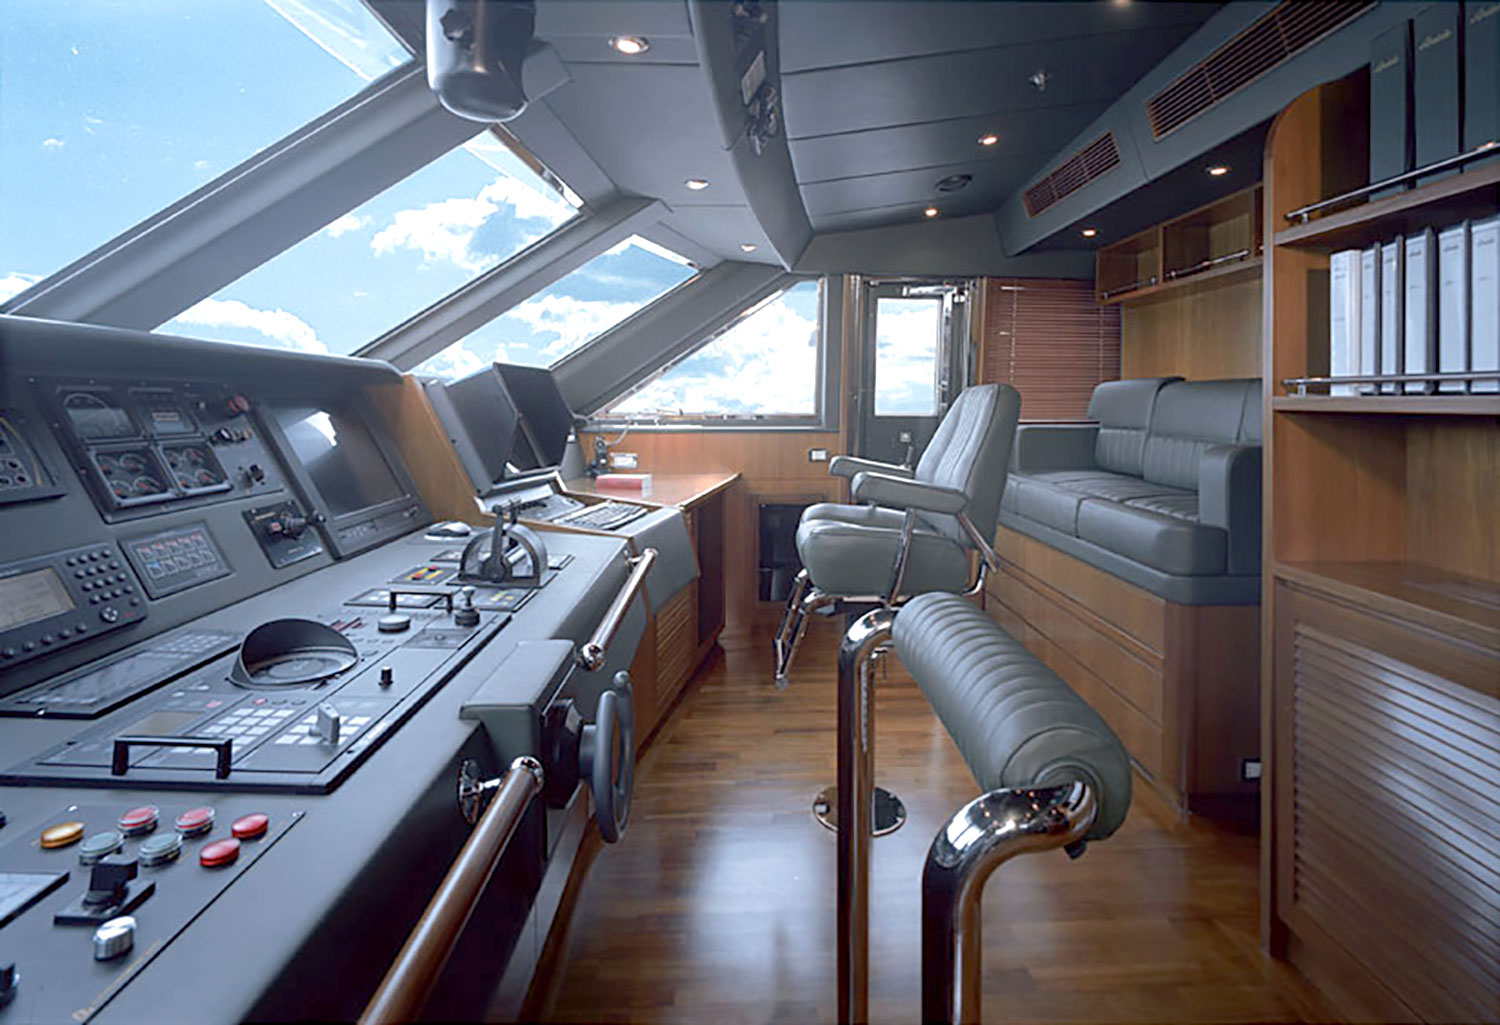 Yacht Interior Design